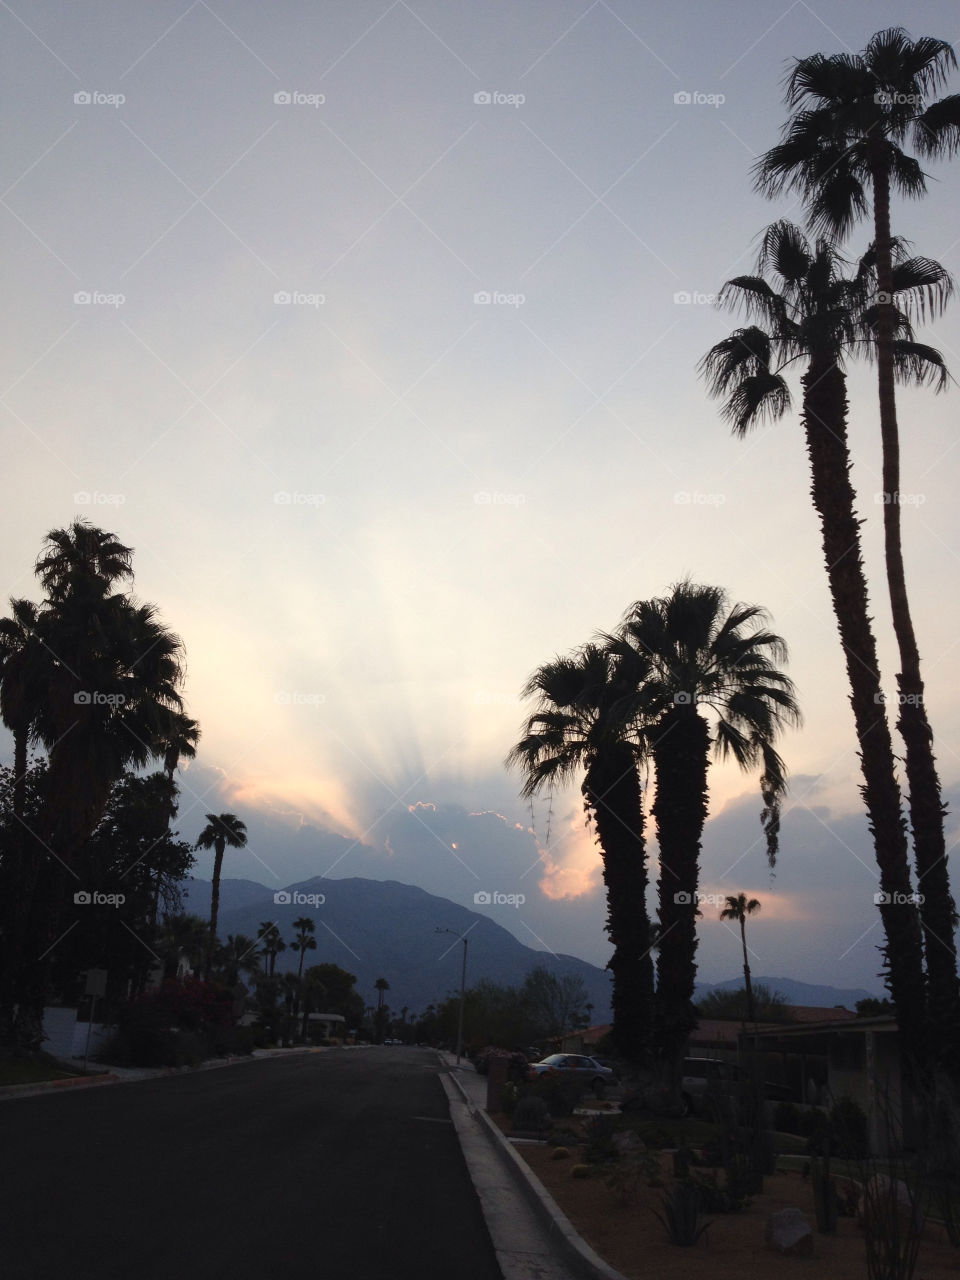 sky sunset palm trees by davidi92260